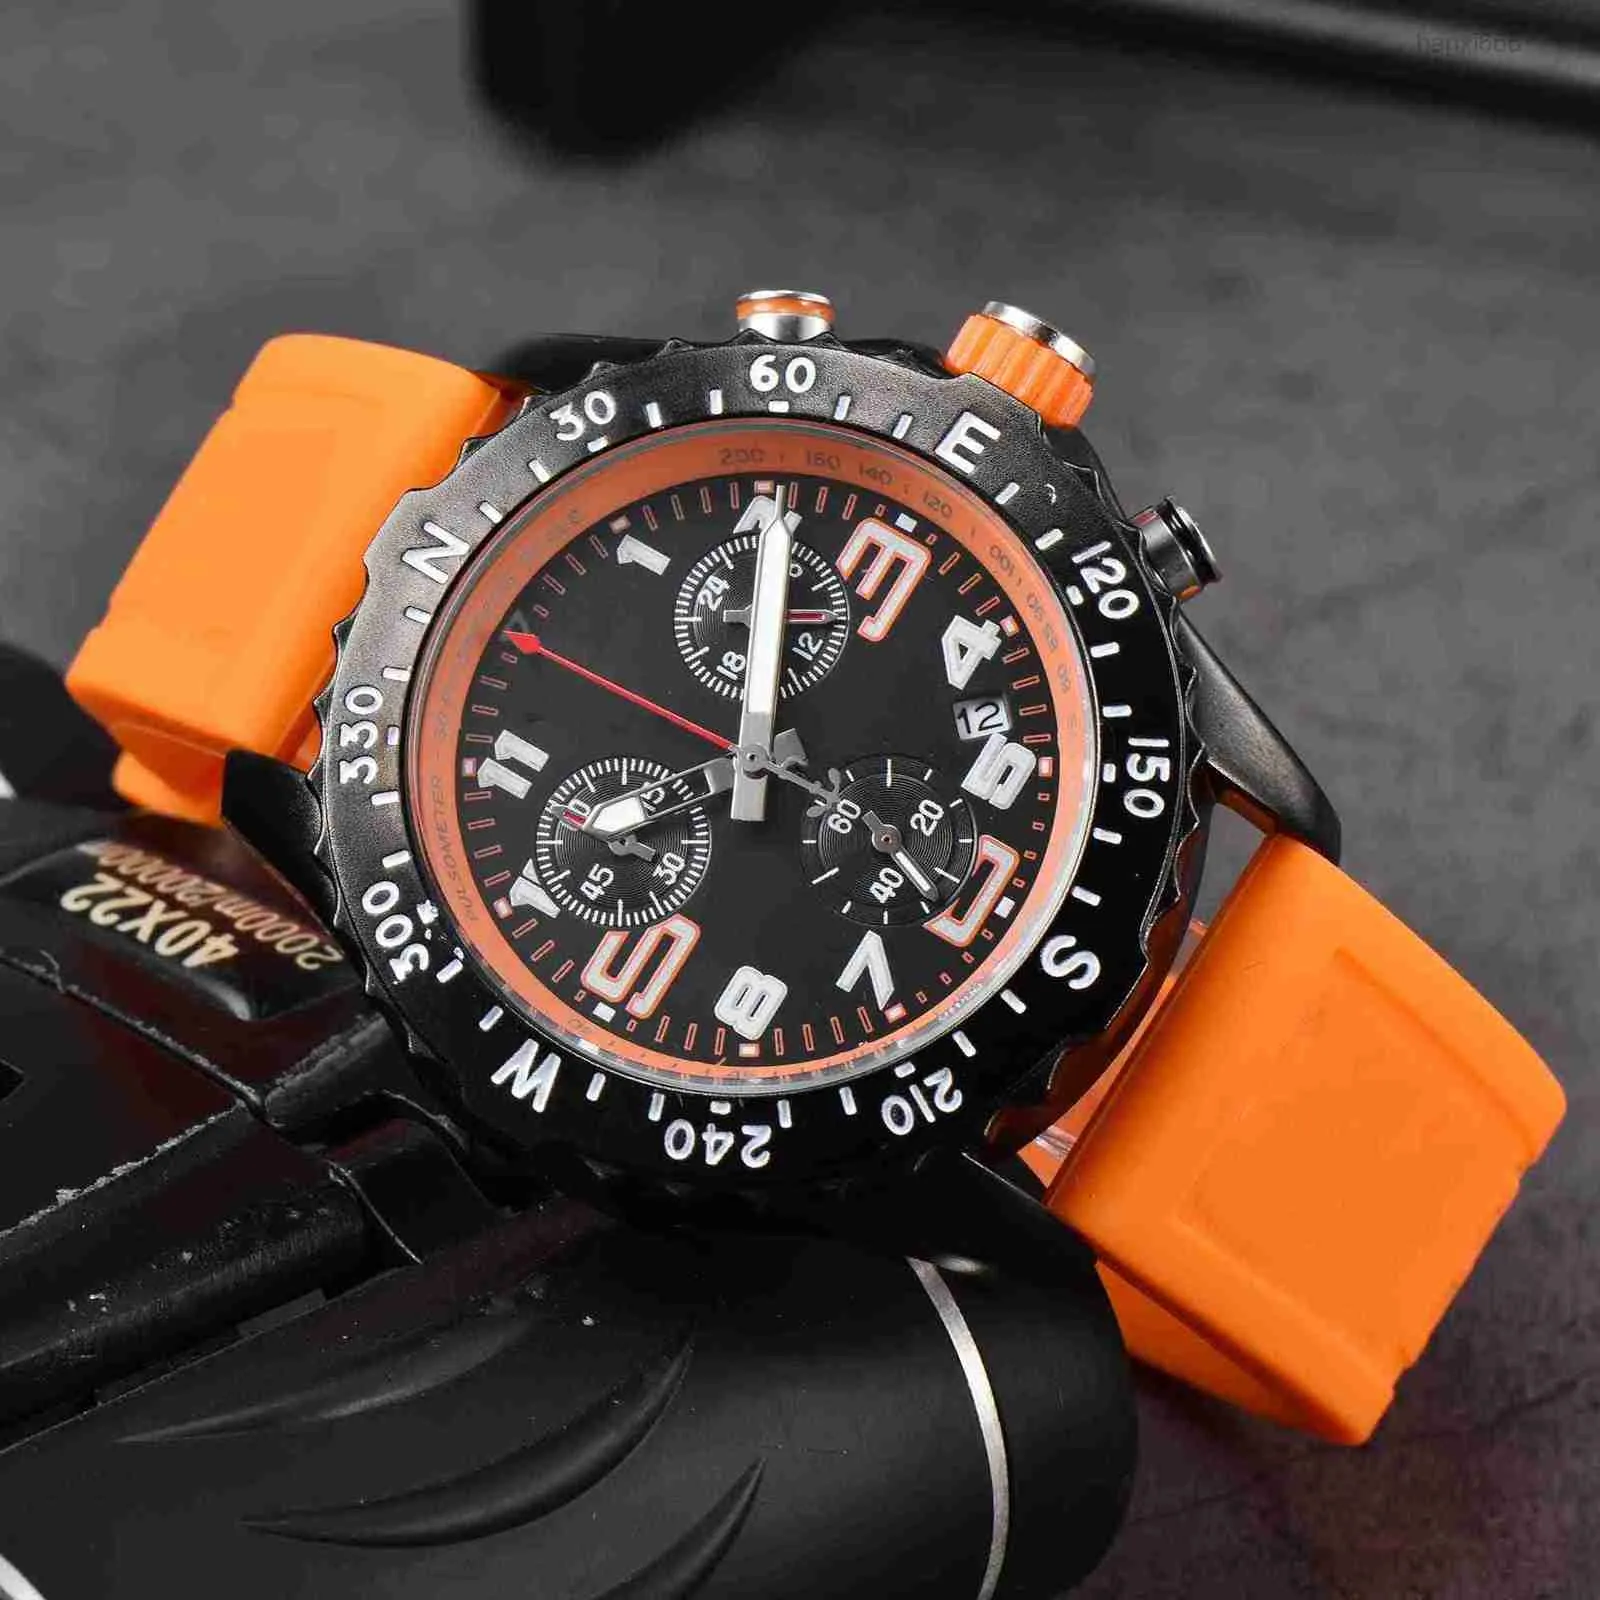 Top luxe hommes Quartz Endurance Pro Avenger chronographe 44mm plusieurs couleurs caoutchouc hommes verre bracelet